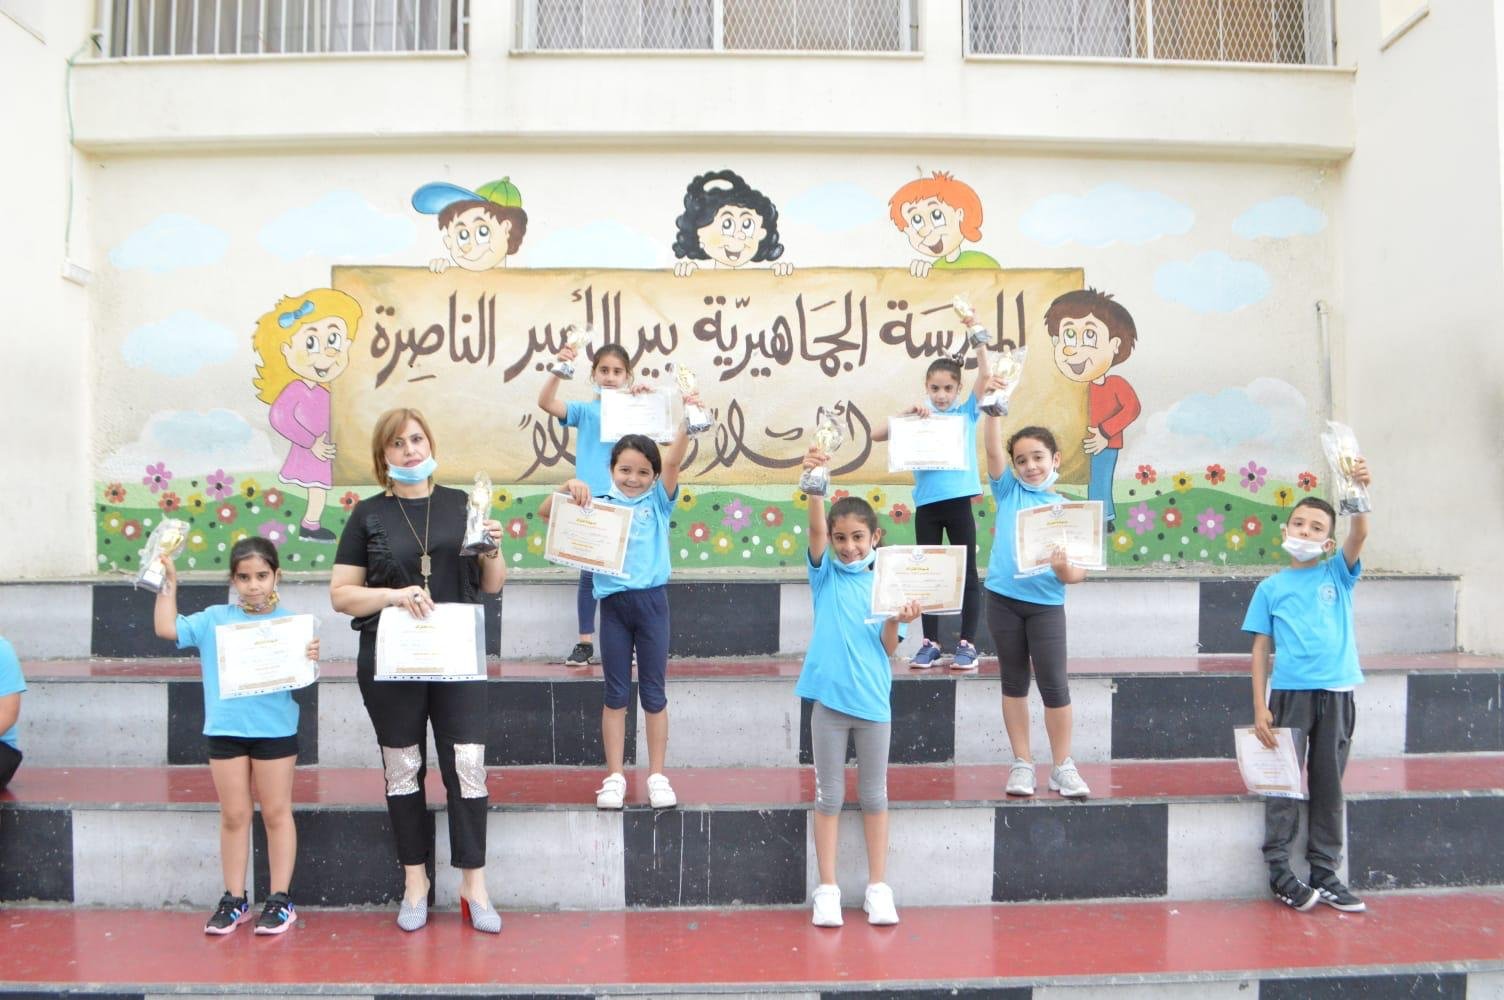 نجاحات وتألّقات في موضوع الرياضيات في المدرسة الجماهيرية بير الأمير - الناصرة -1